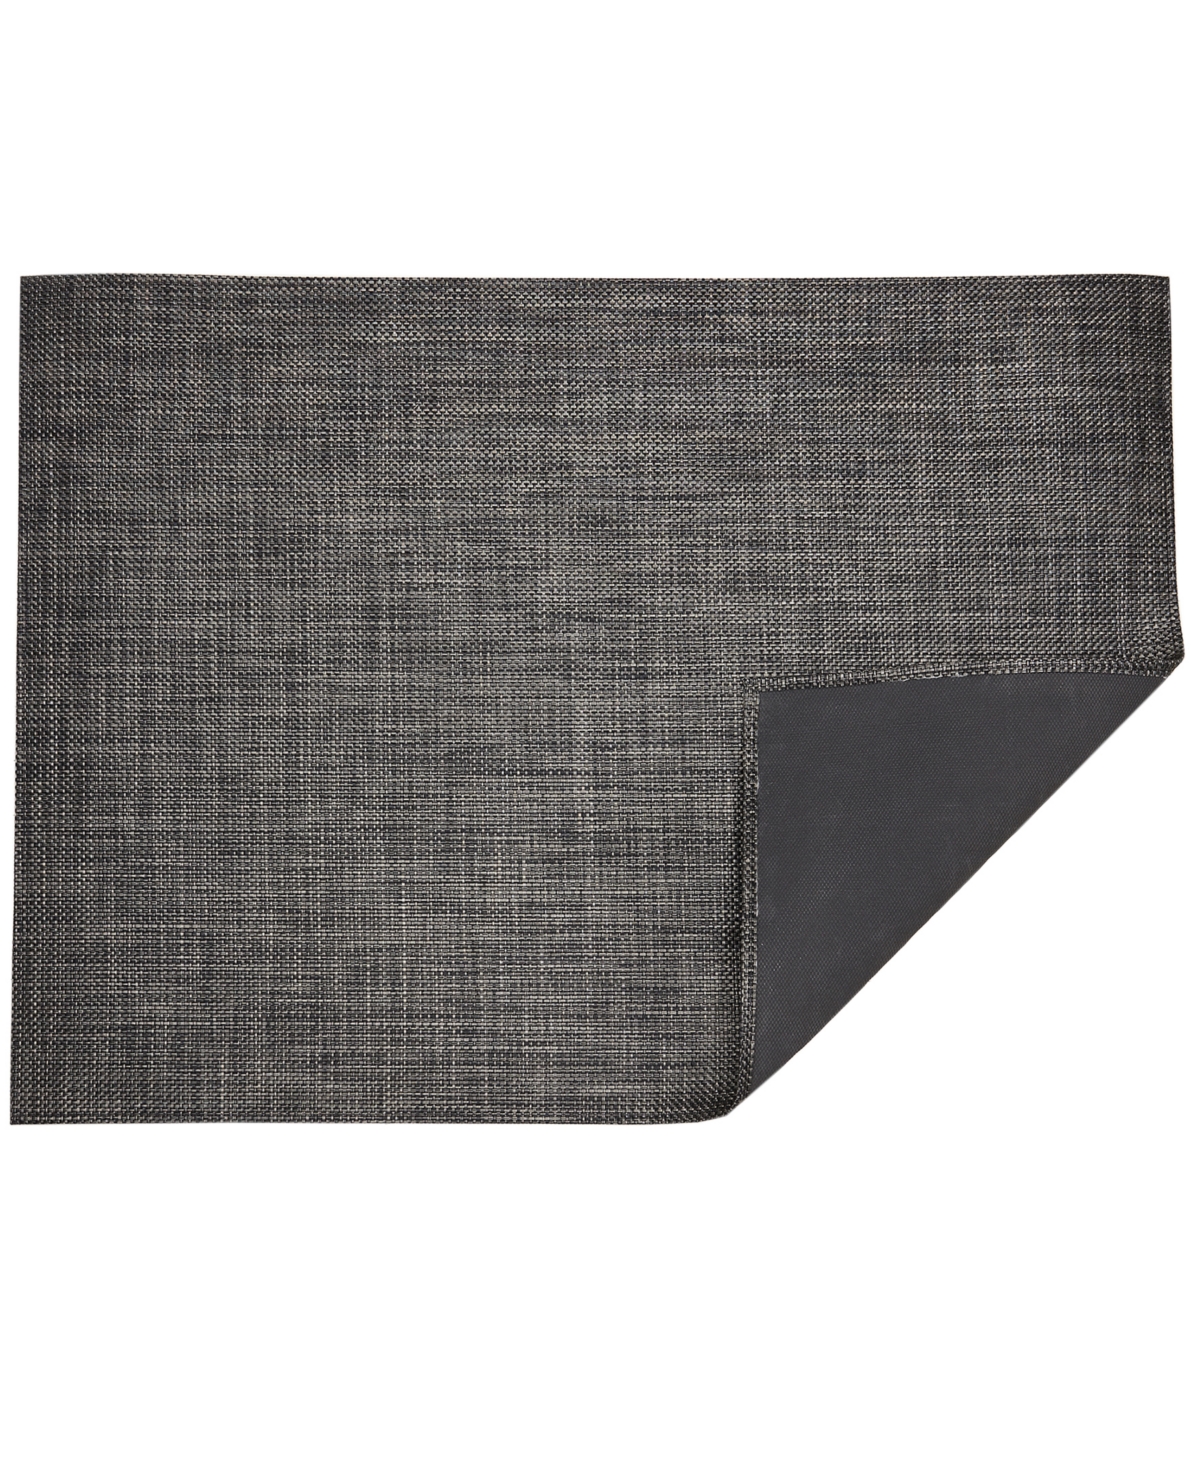 Basketweave Floormat, 35" x 48" - Carbon